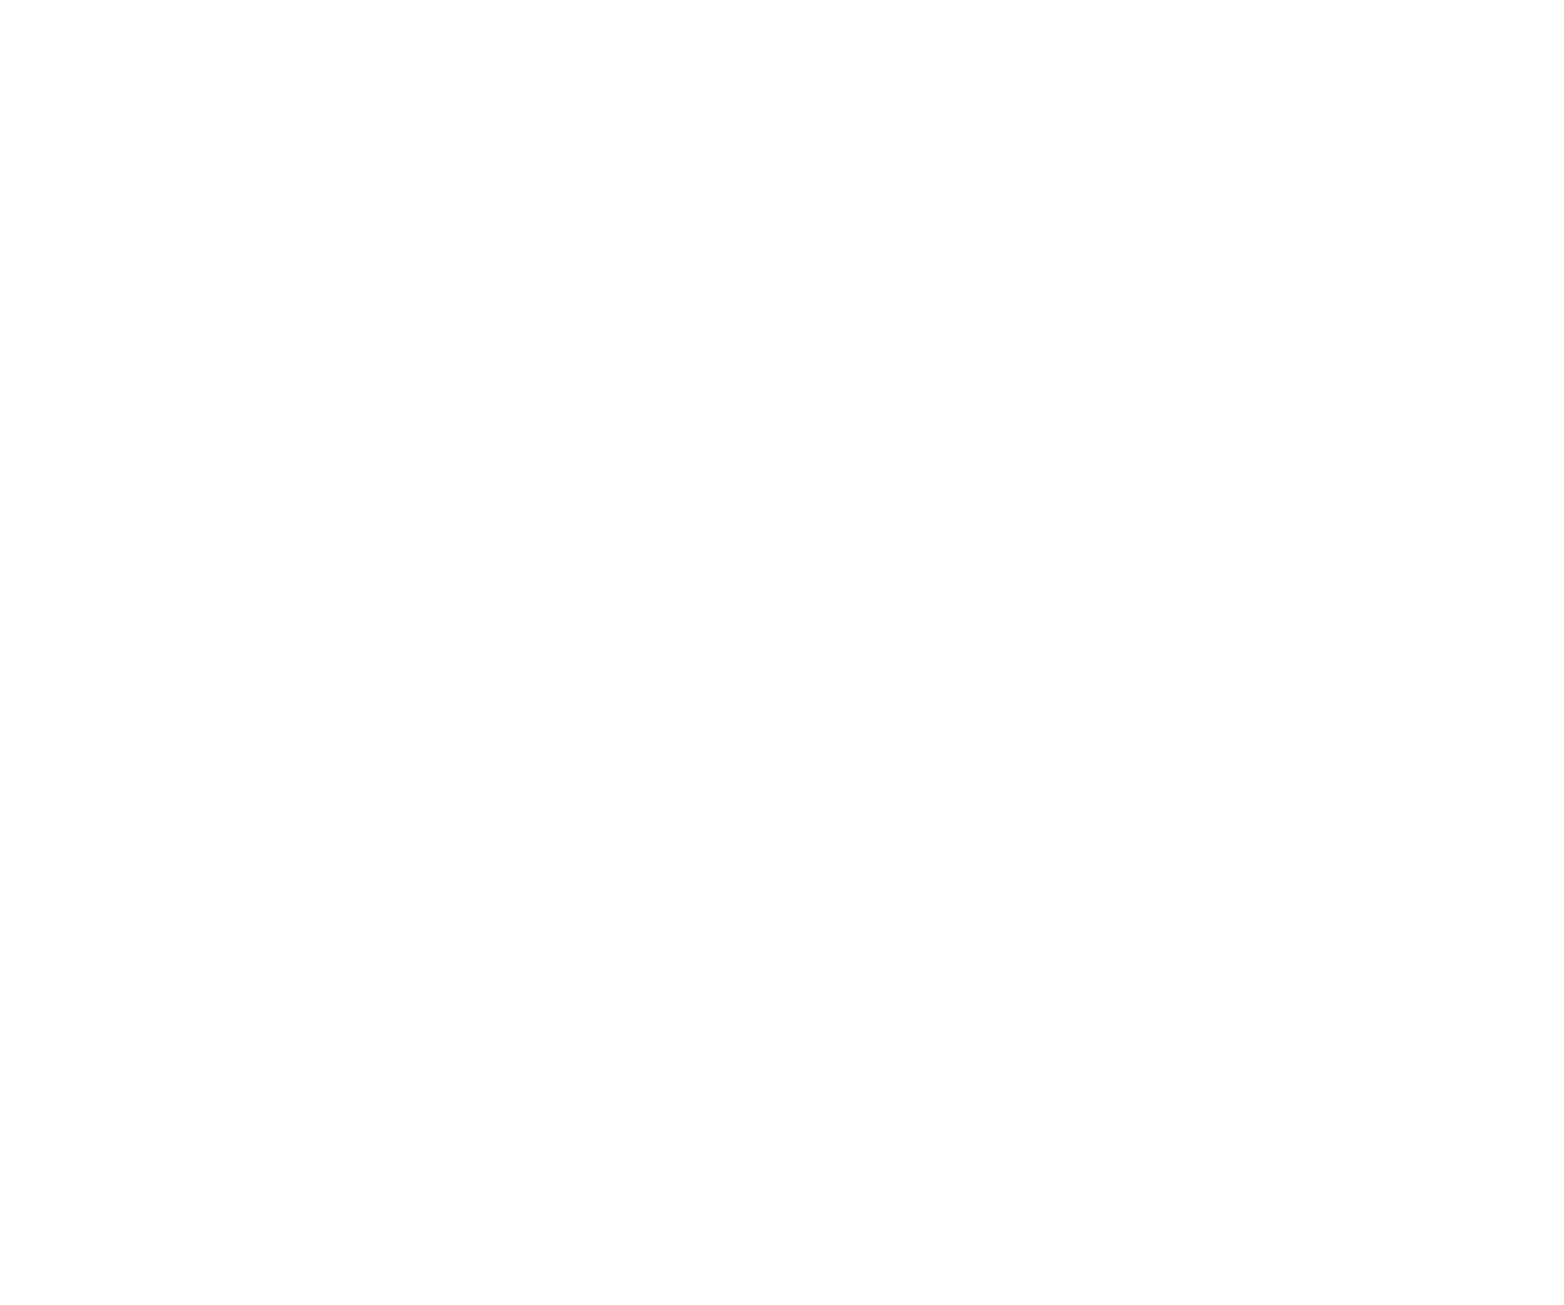 Grupa Zywiec logo pour fonds sombres (PNG transparent)